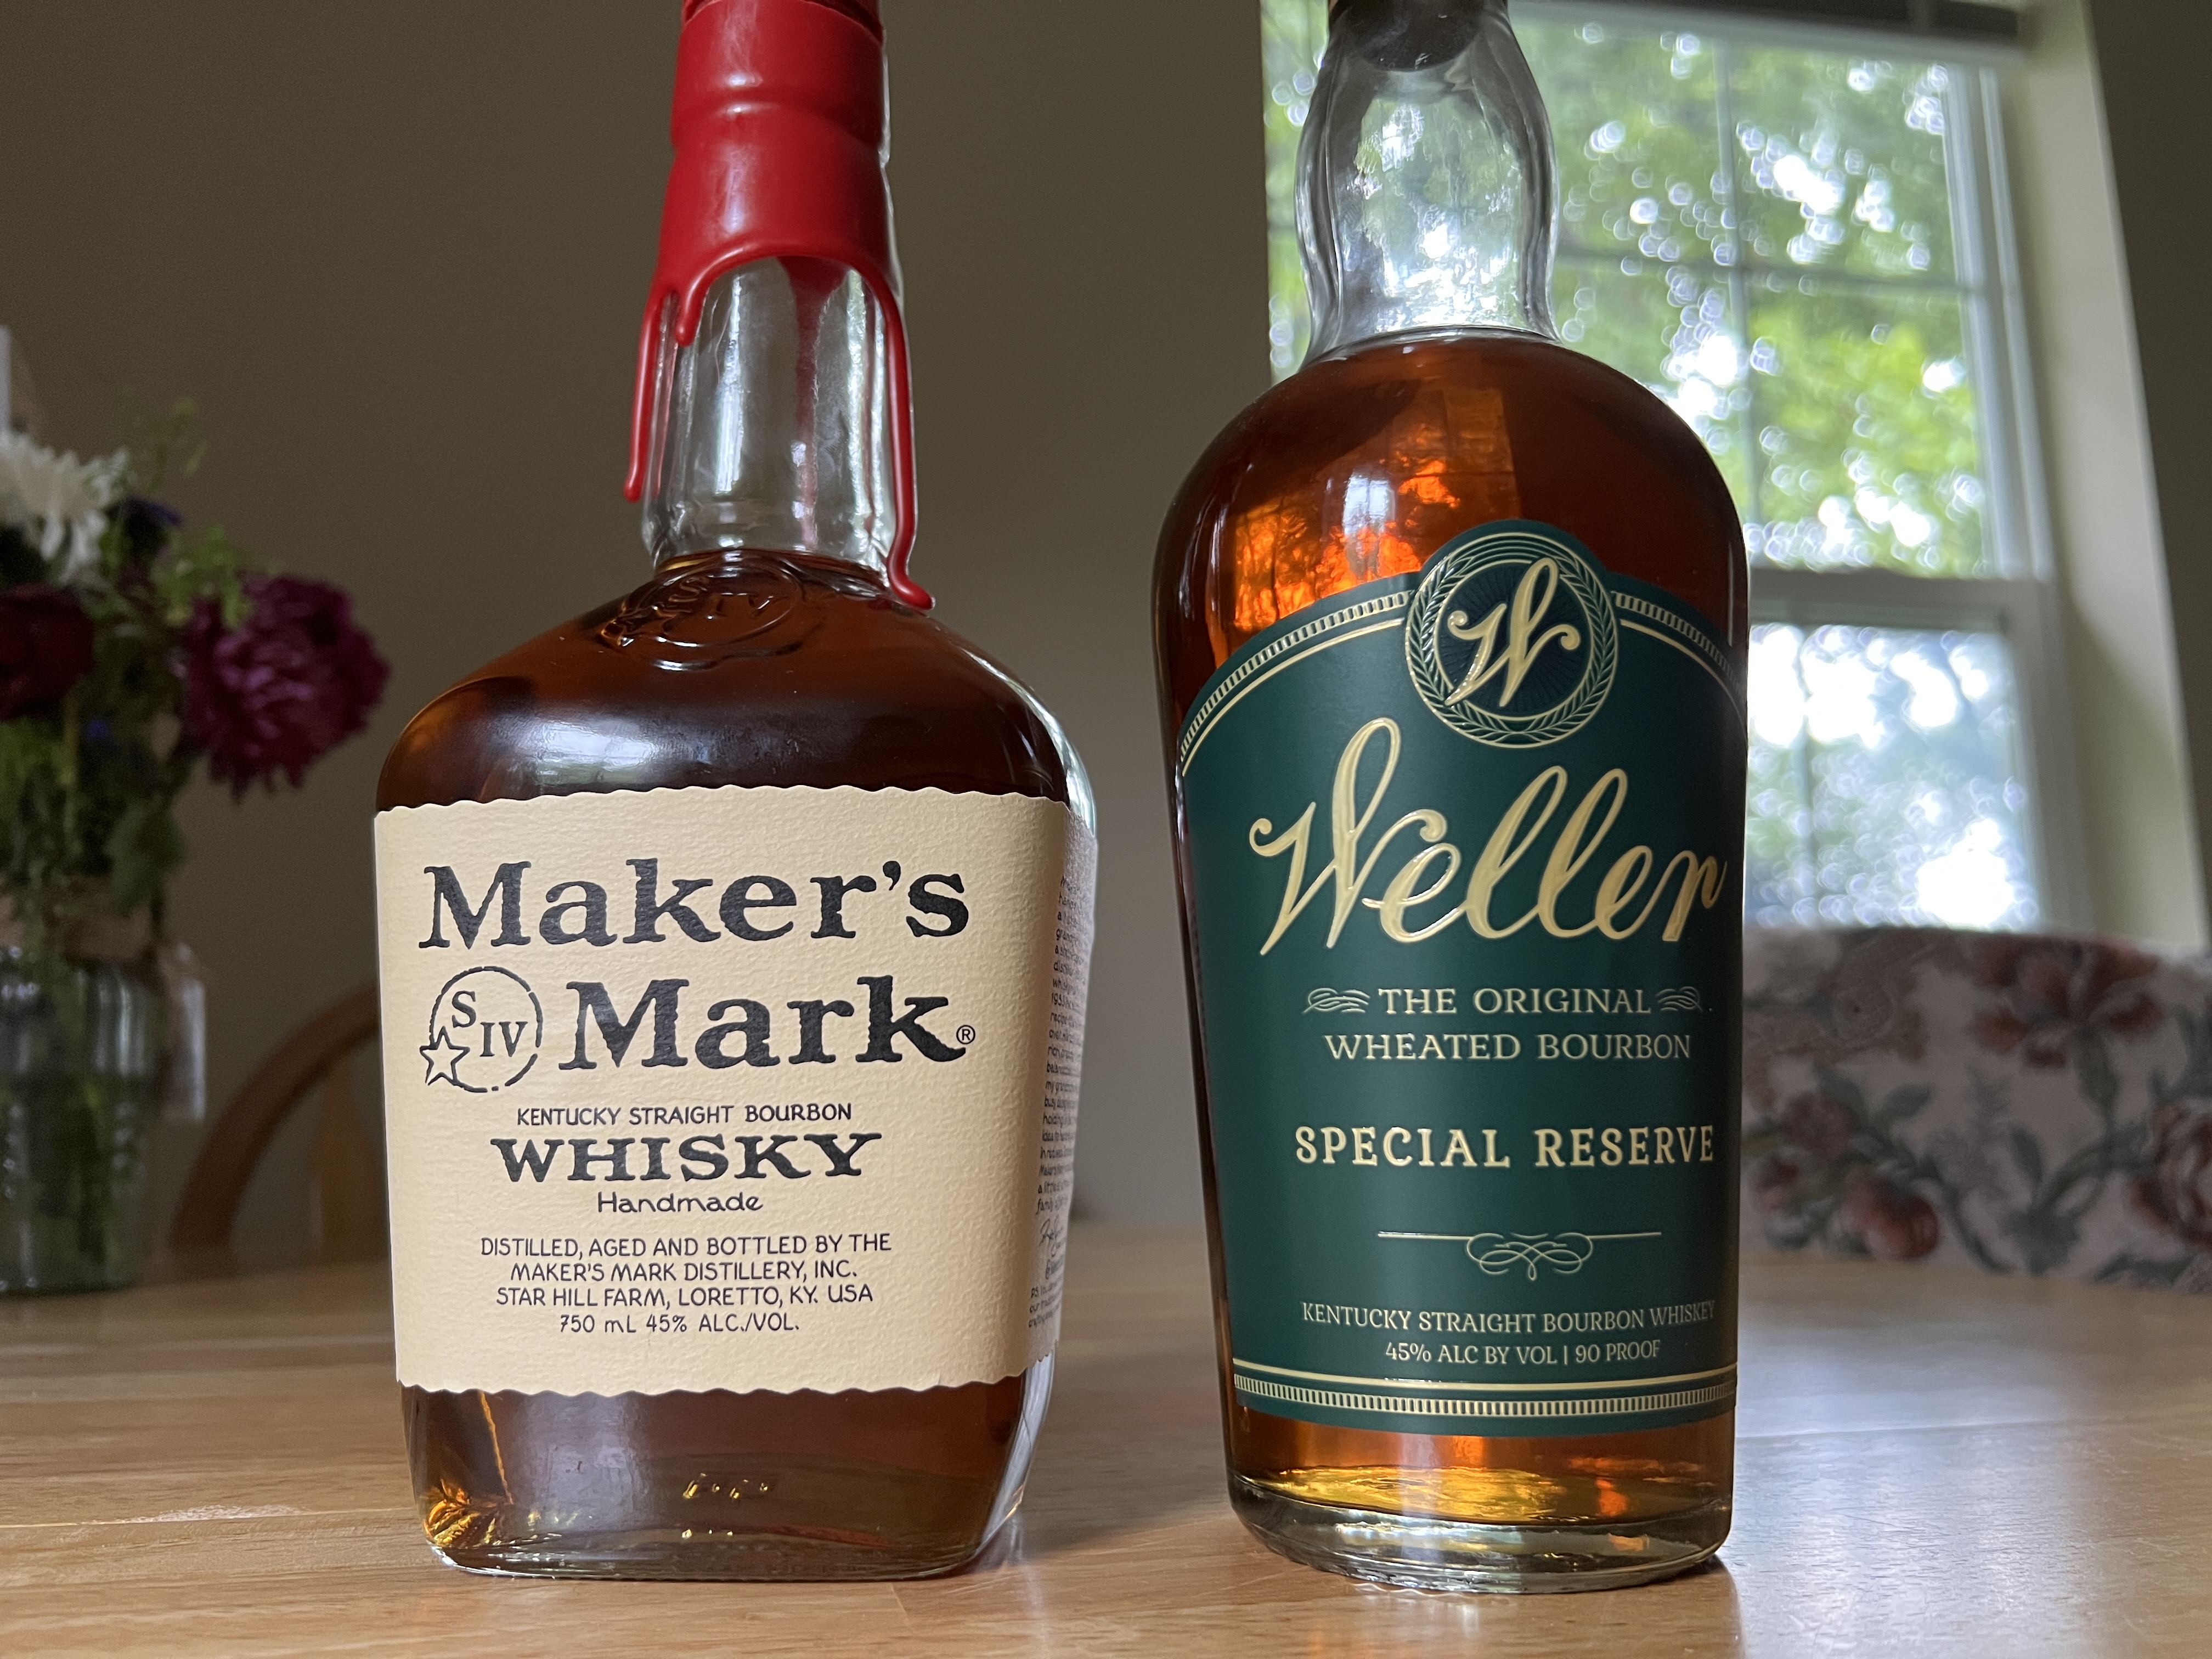 Weller vs. Maker's Mark